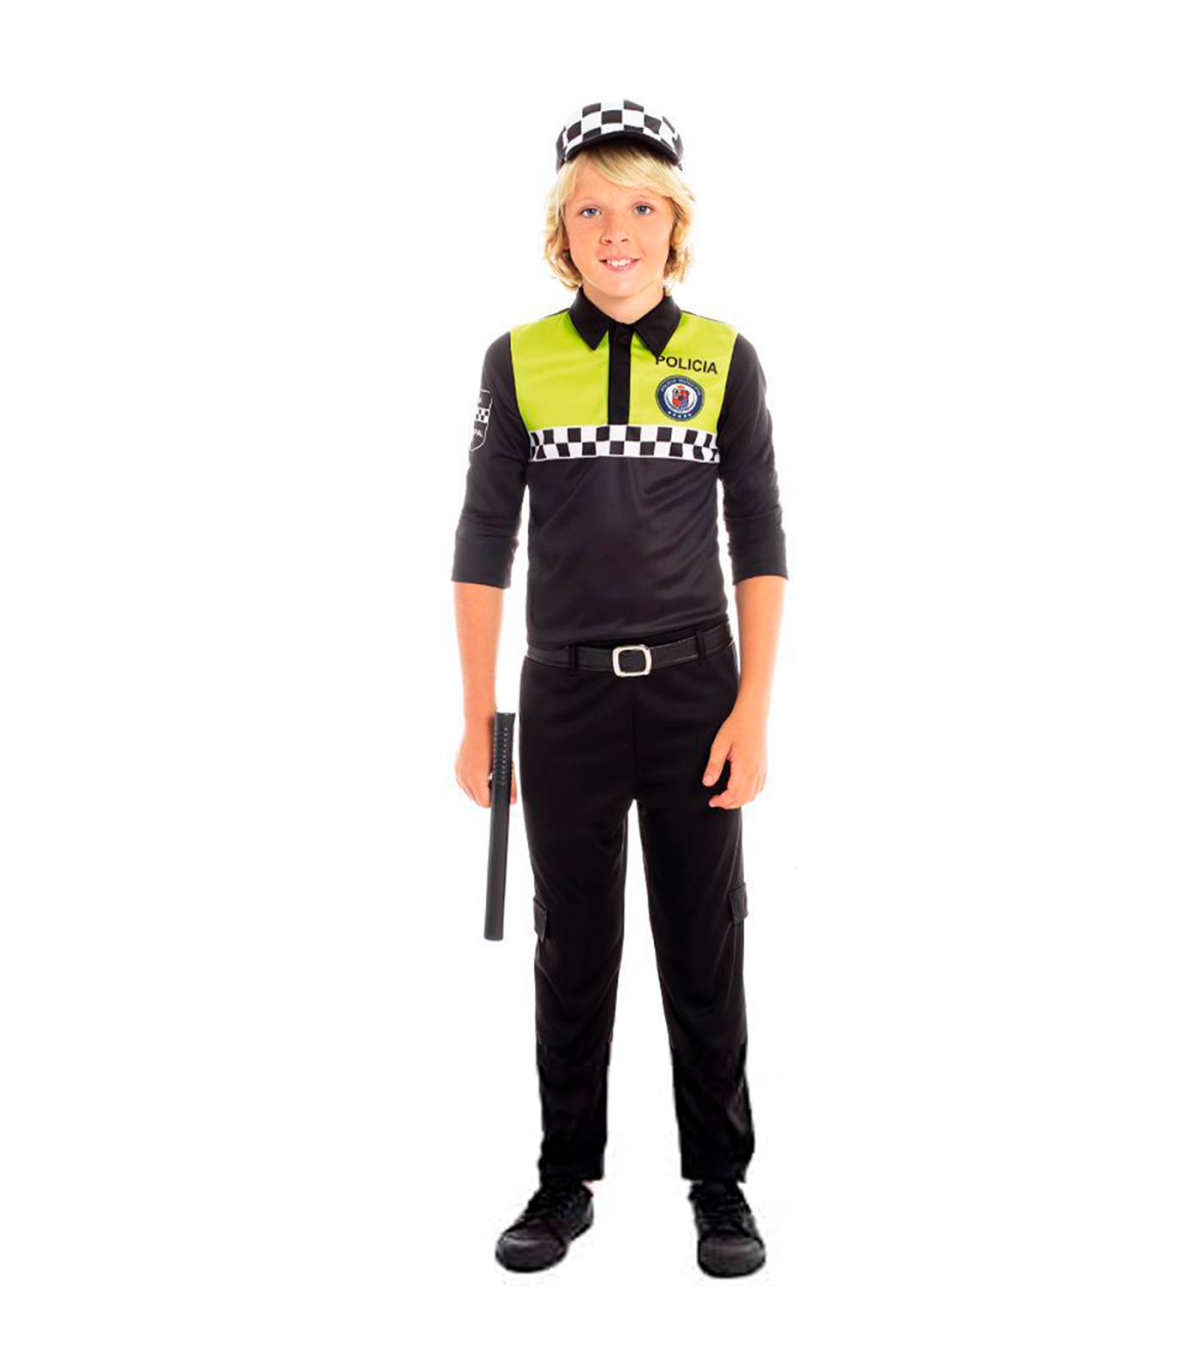 Tradineur - Disfraz policía infantil, agente policía local, fibra  sintética, incluye camiseta, pantalón, gorra y cinturón, carna